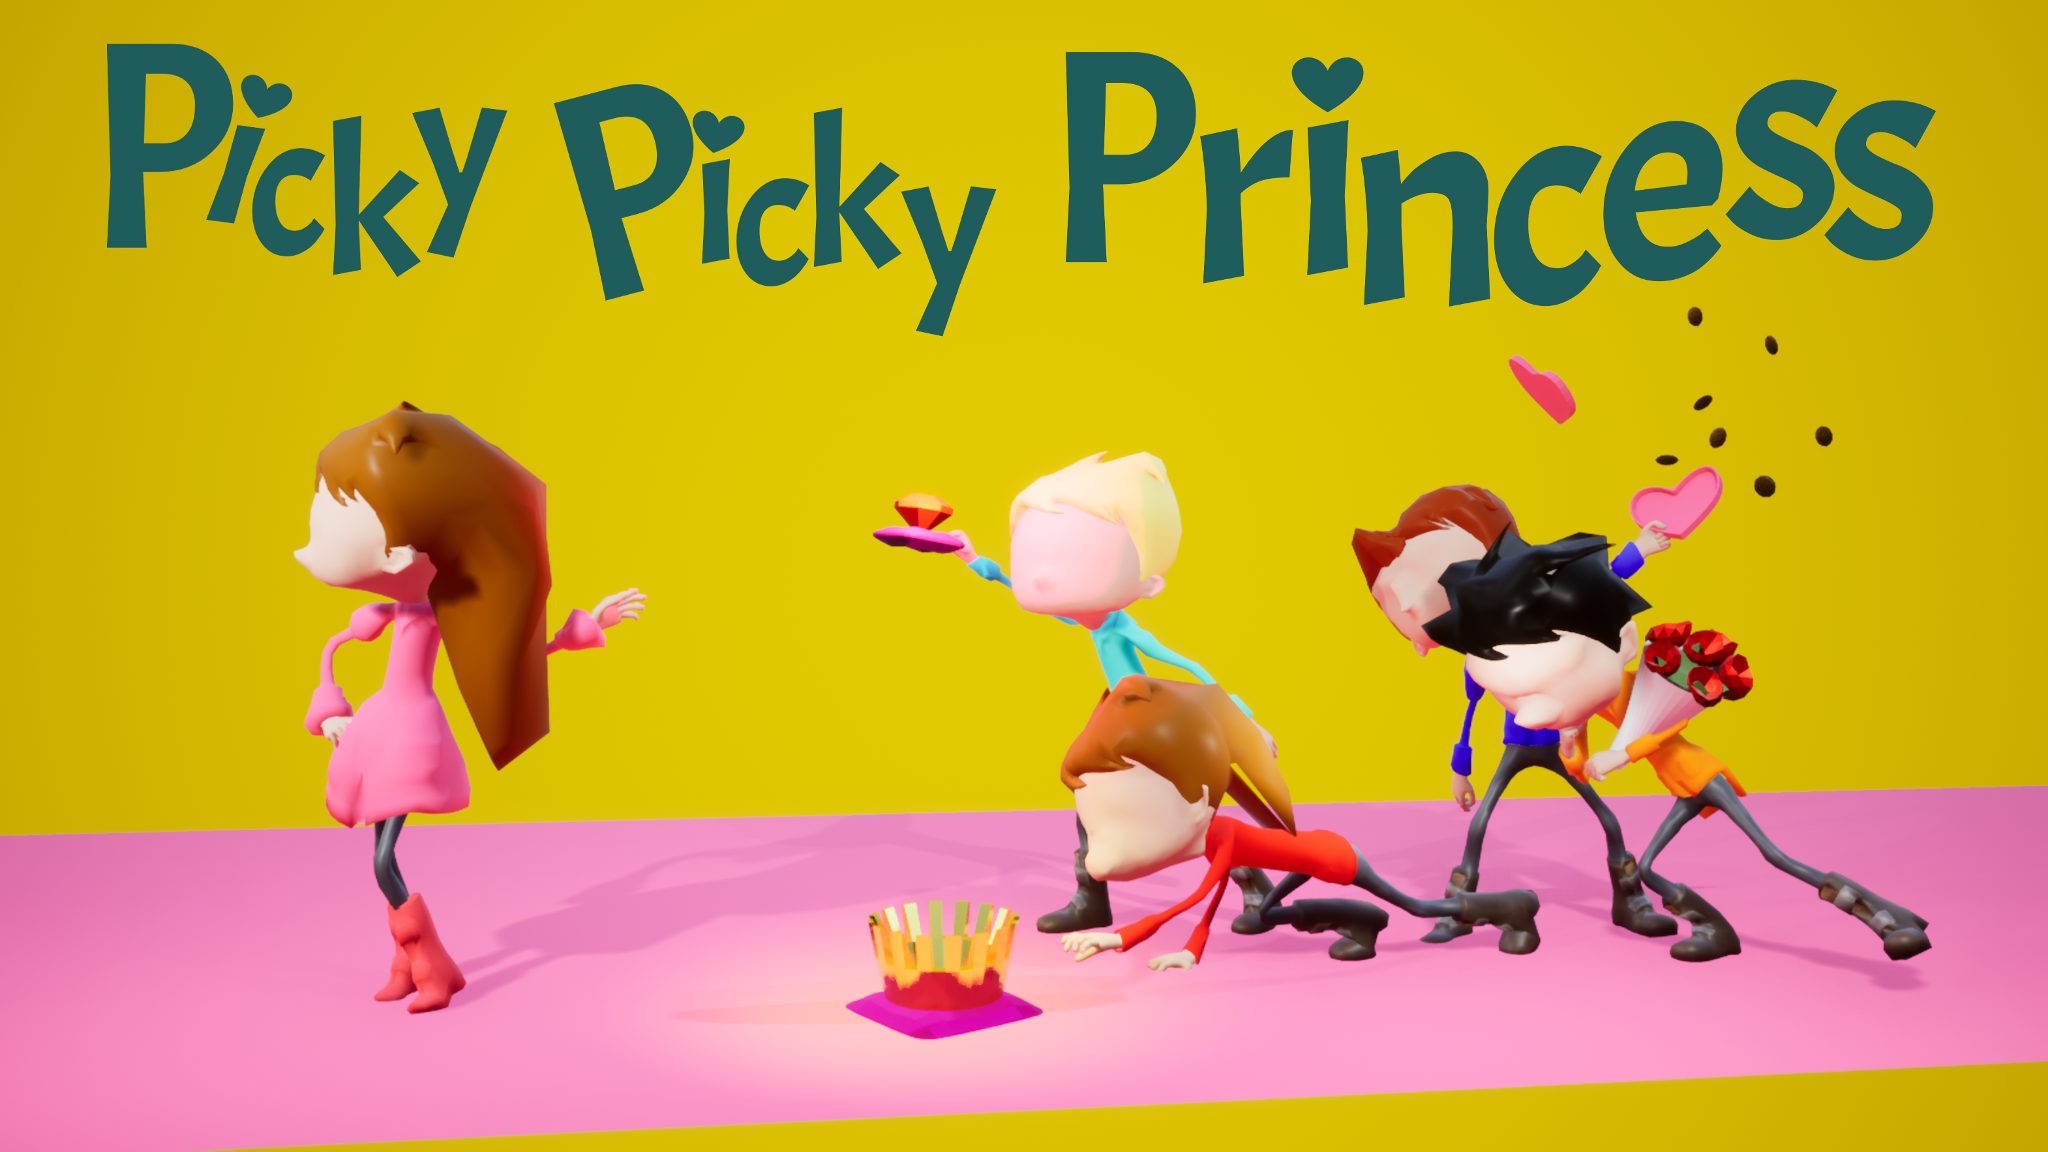 Picky Picky Princess